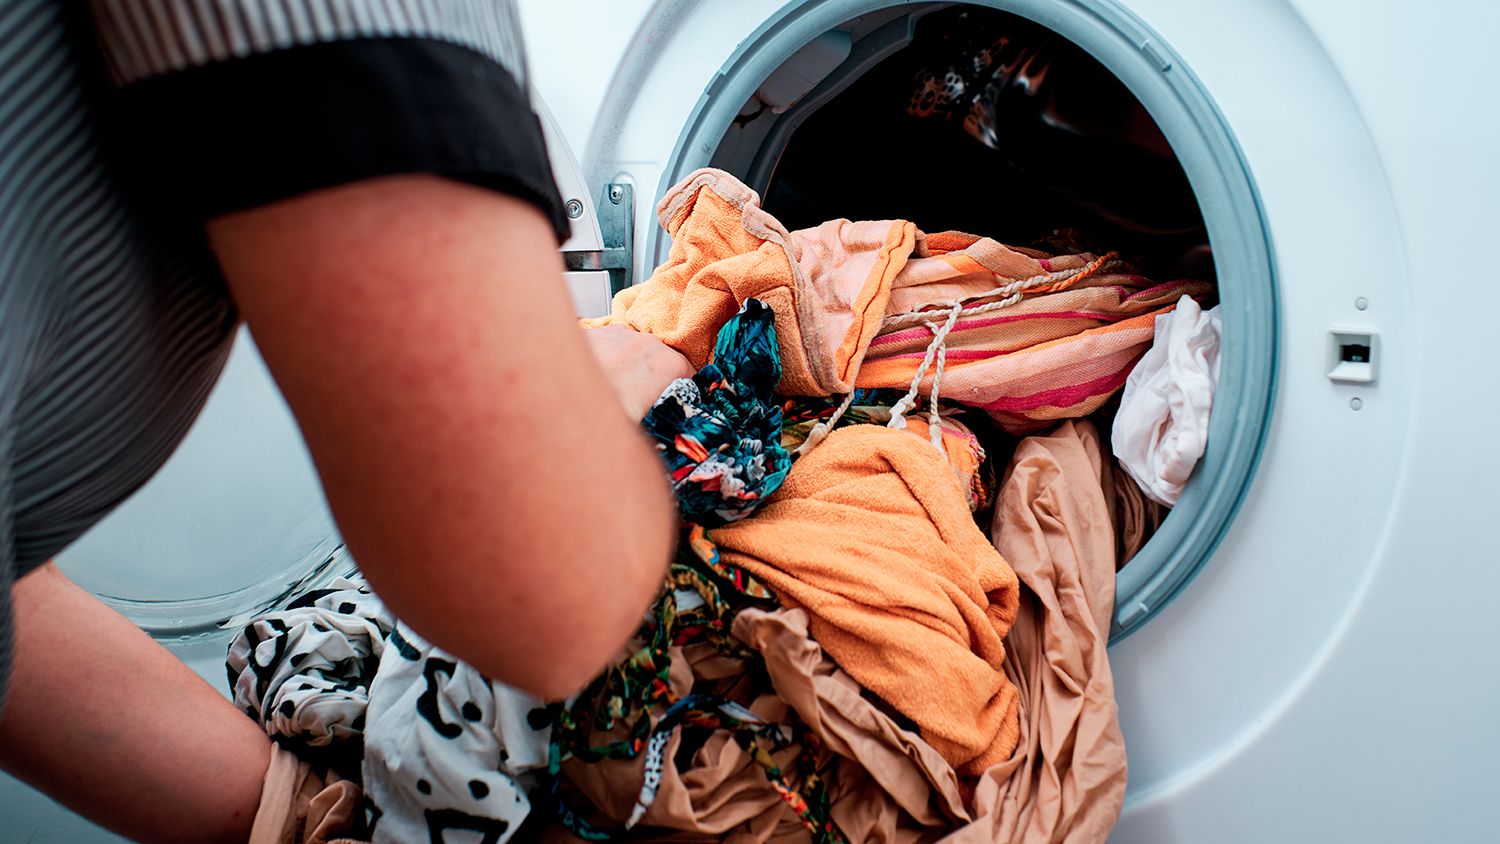 SUSTITUTO BARATO SECADORA  Adiós a la secadora: el aparato portátil de  Leroy Merlin que seca tu ropa por menos de 50 euros